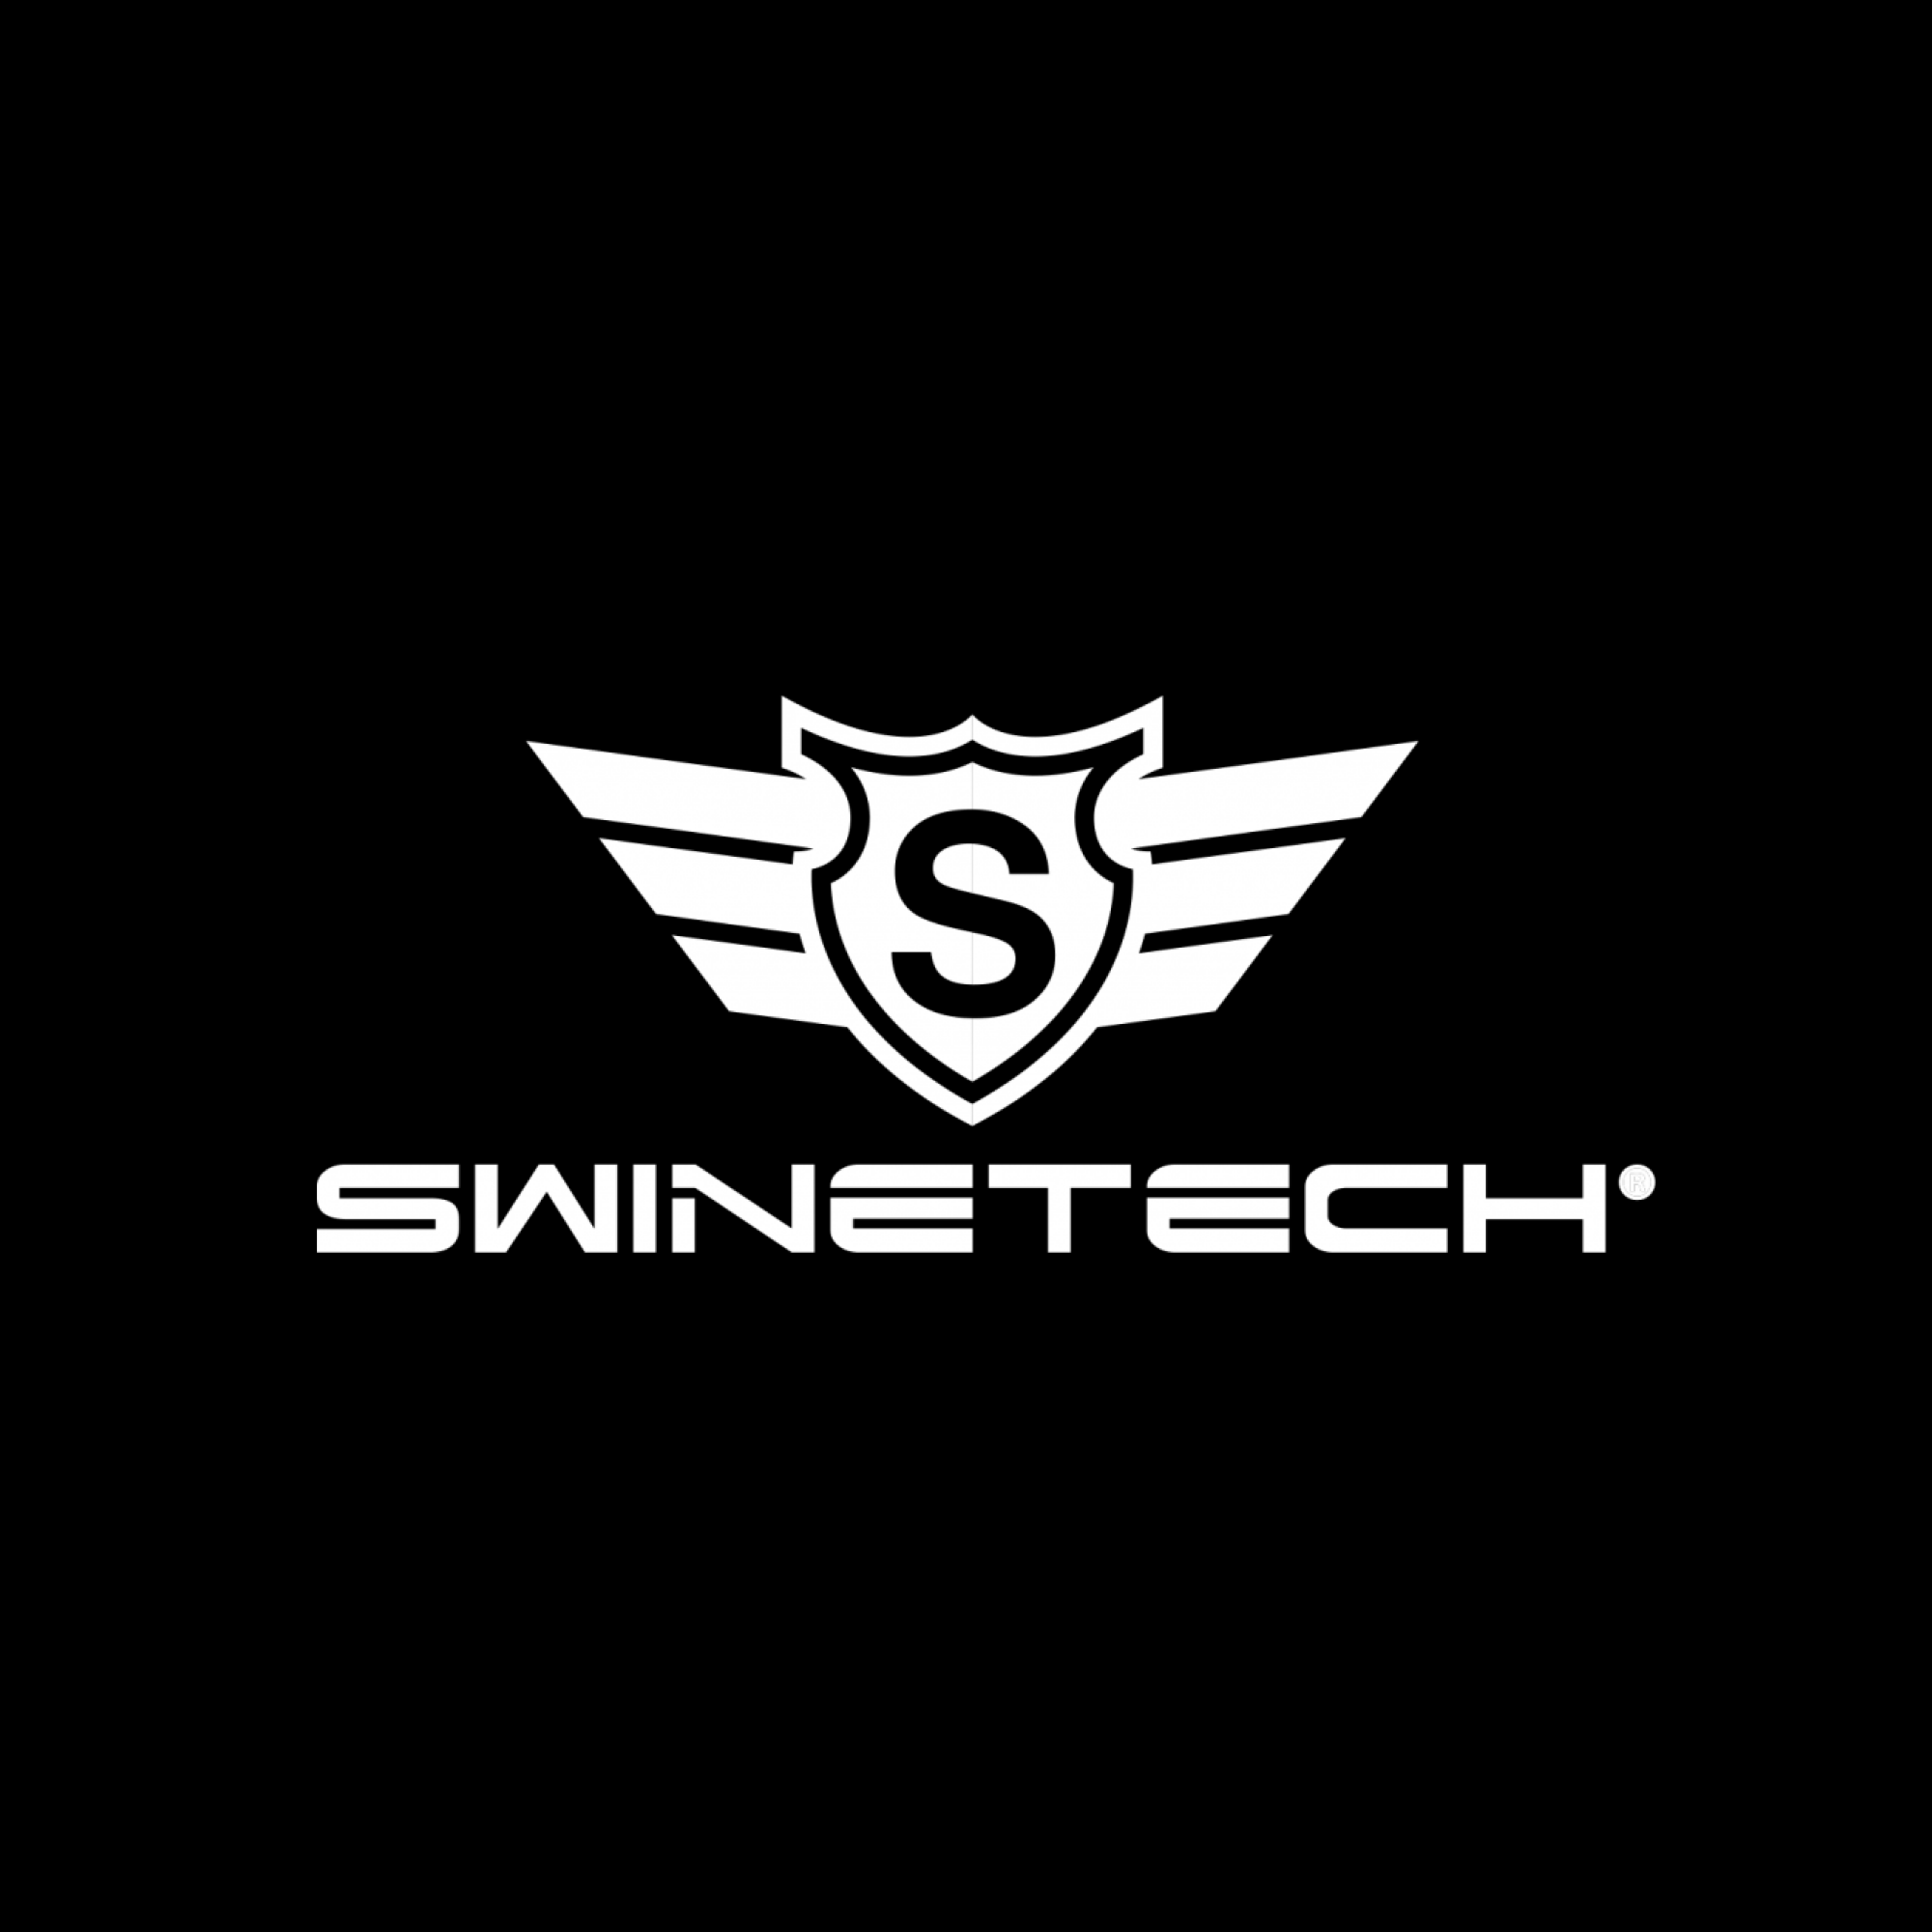 SwineTech